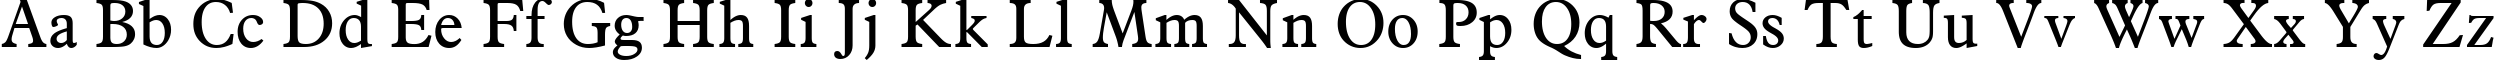 Пример написания английского алфавита шрифтом Aldine 721 BT